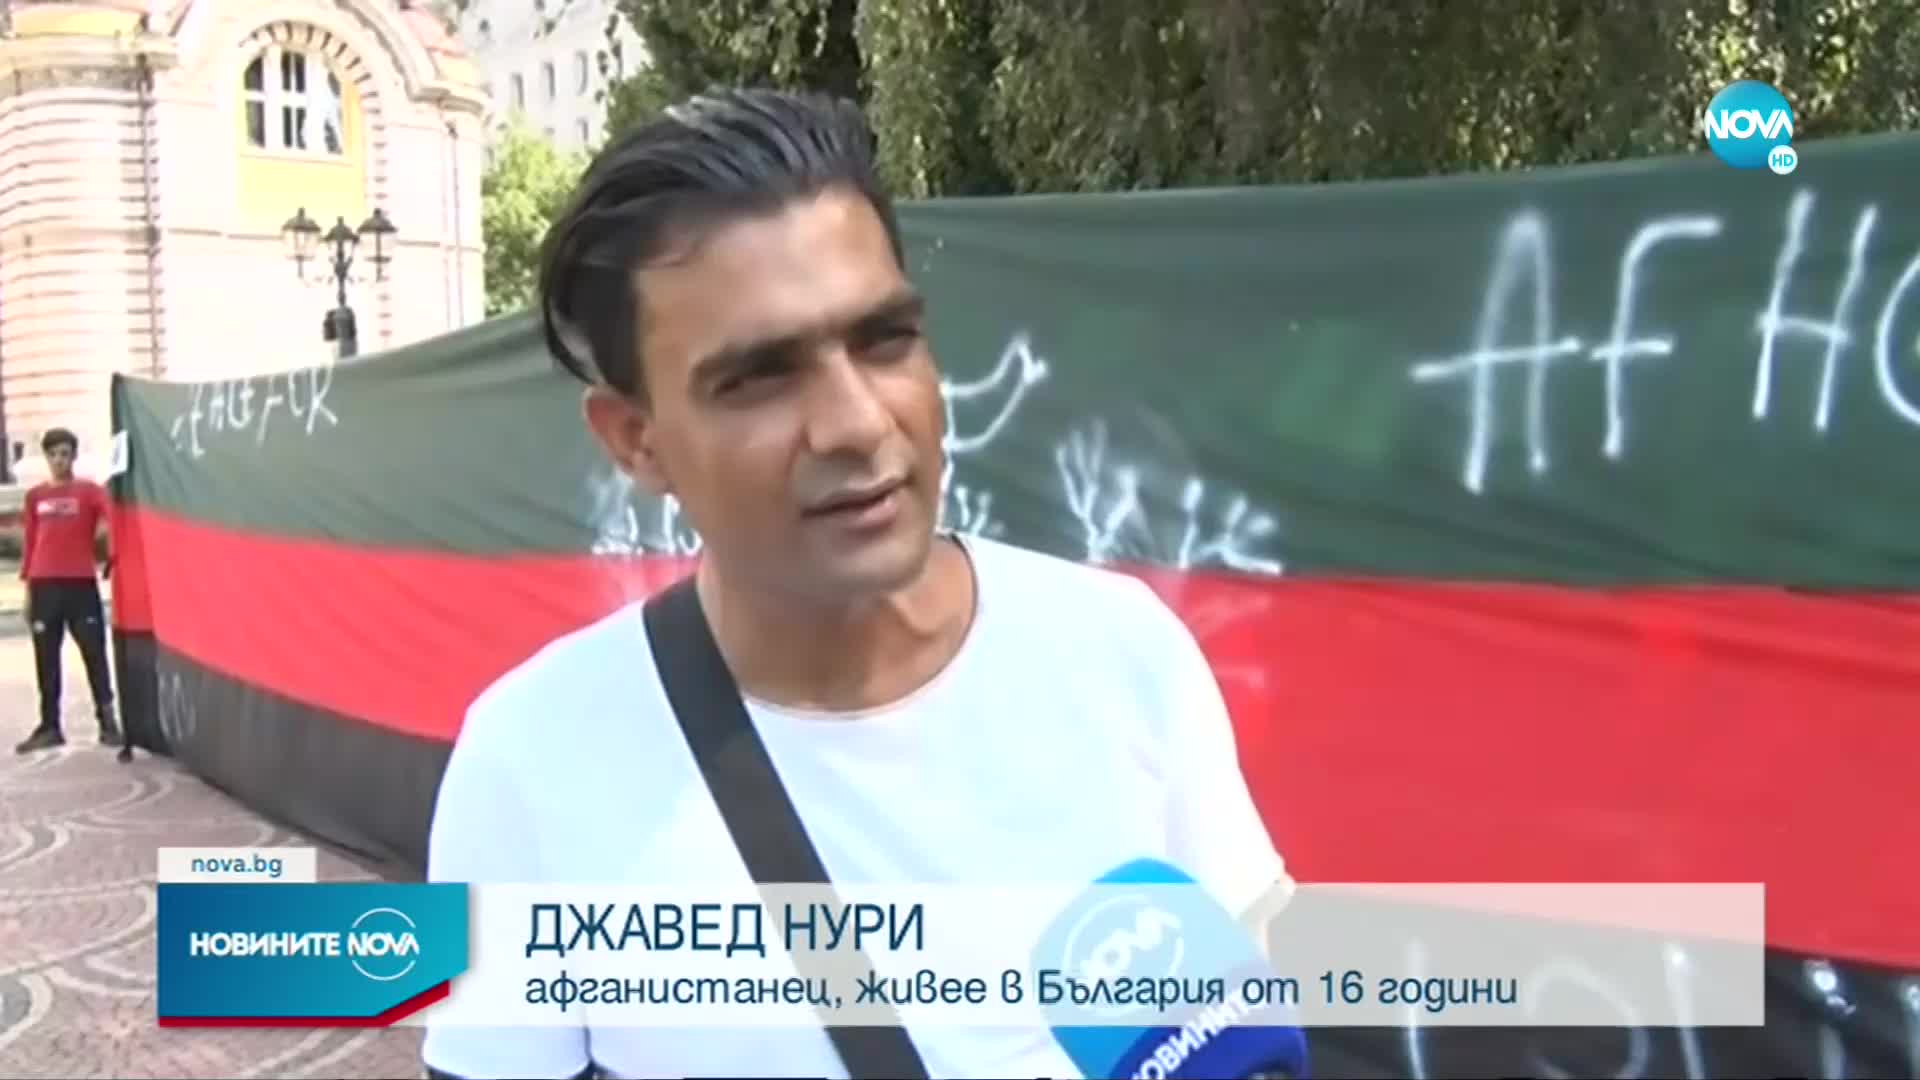 Афганистанци излязоха на шествие в София заради събитията в родината им